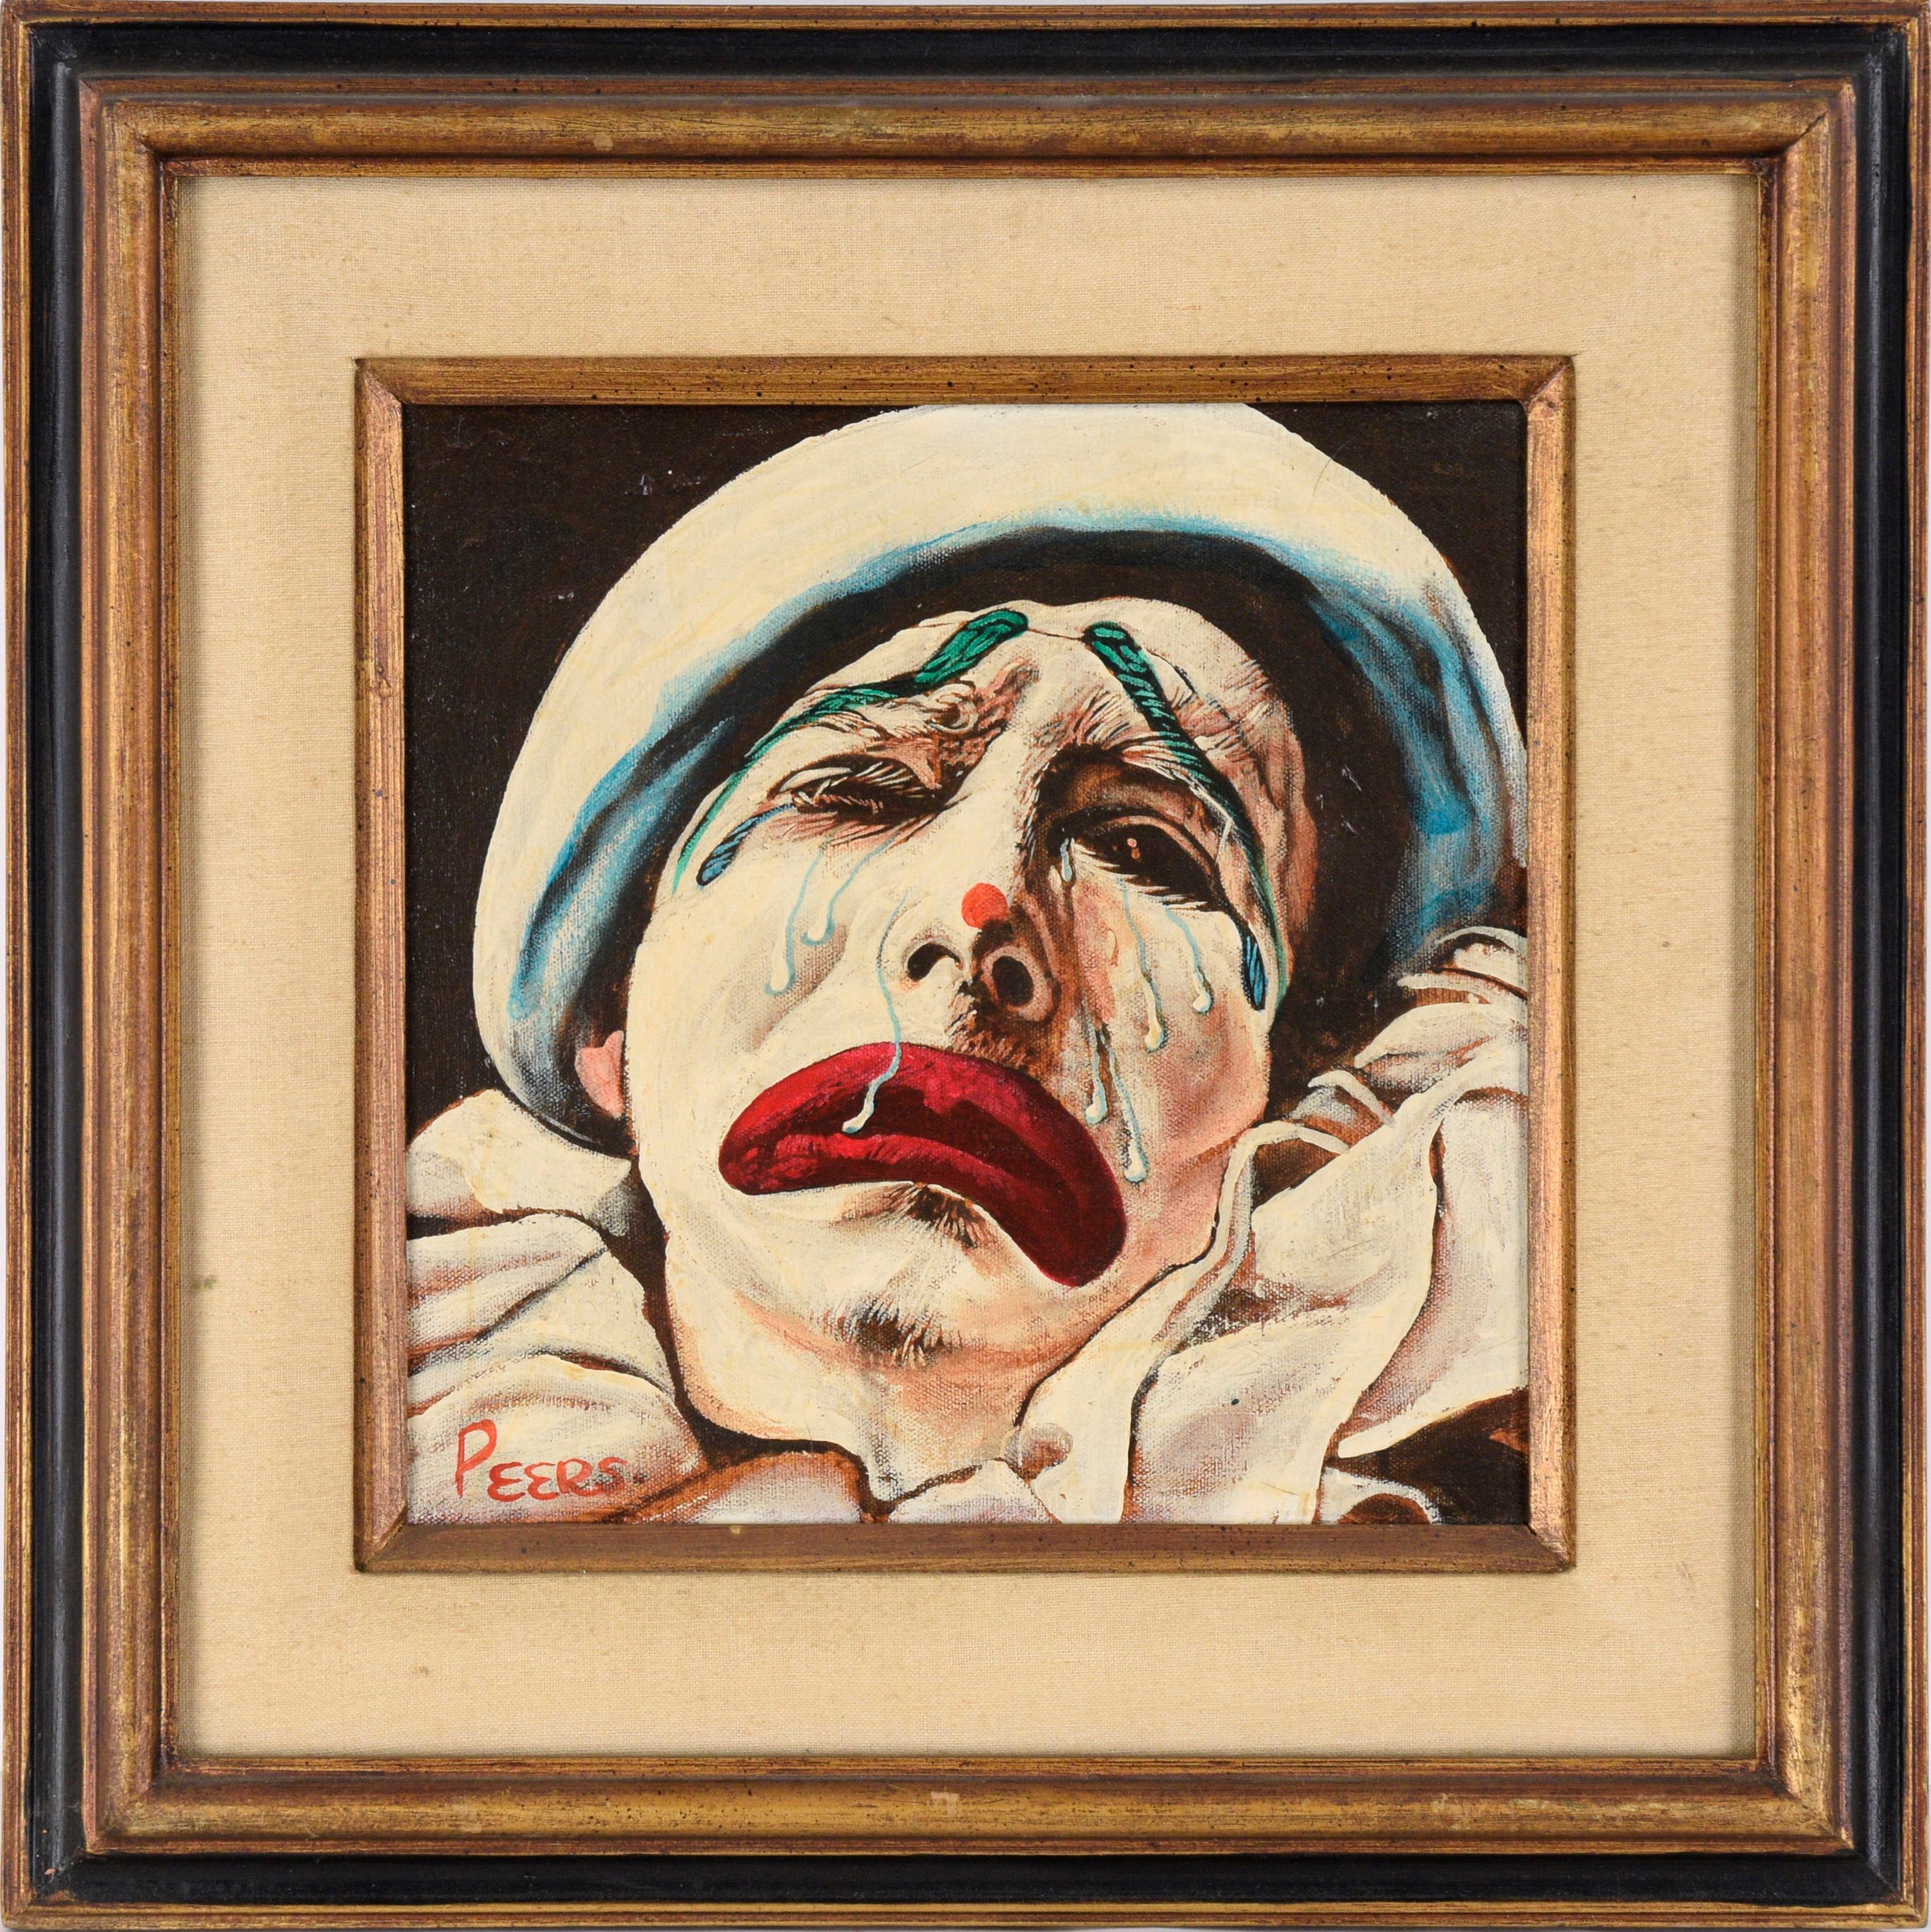 John Peers Portrait Painting – Weinender Clown Porträt in Öl auf Leinwand